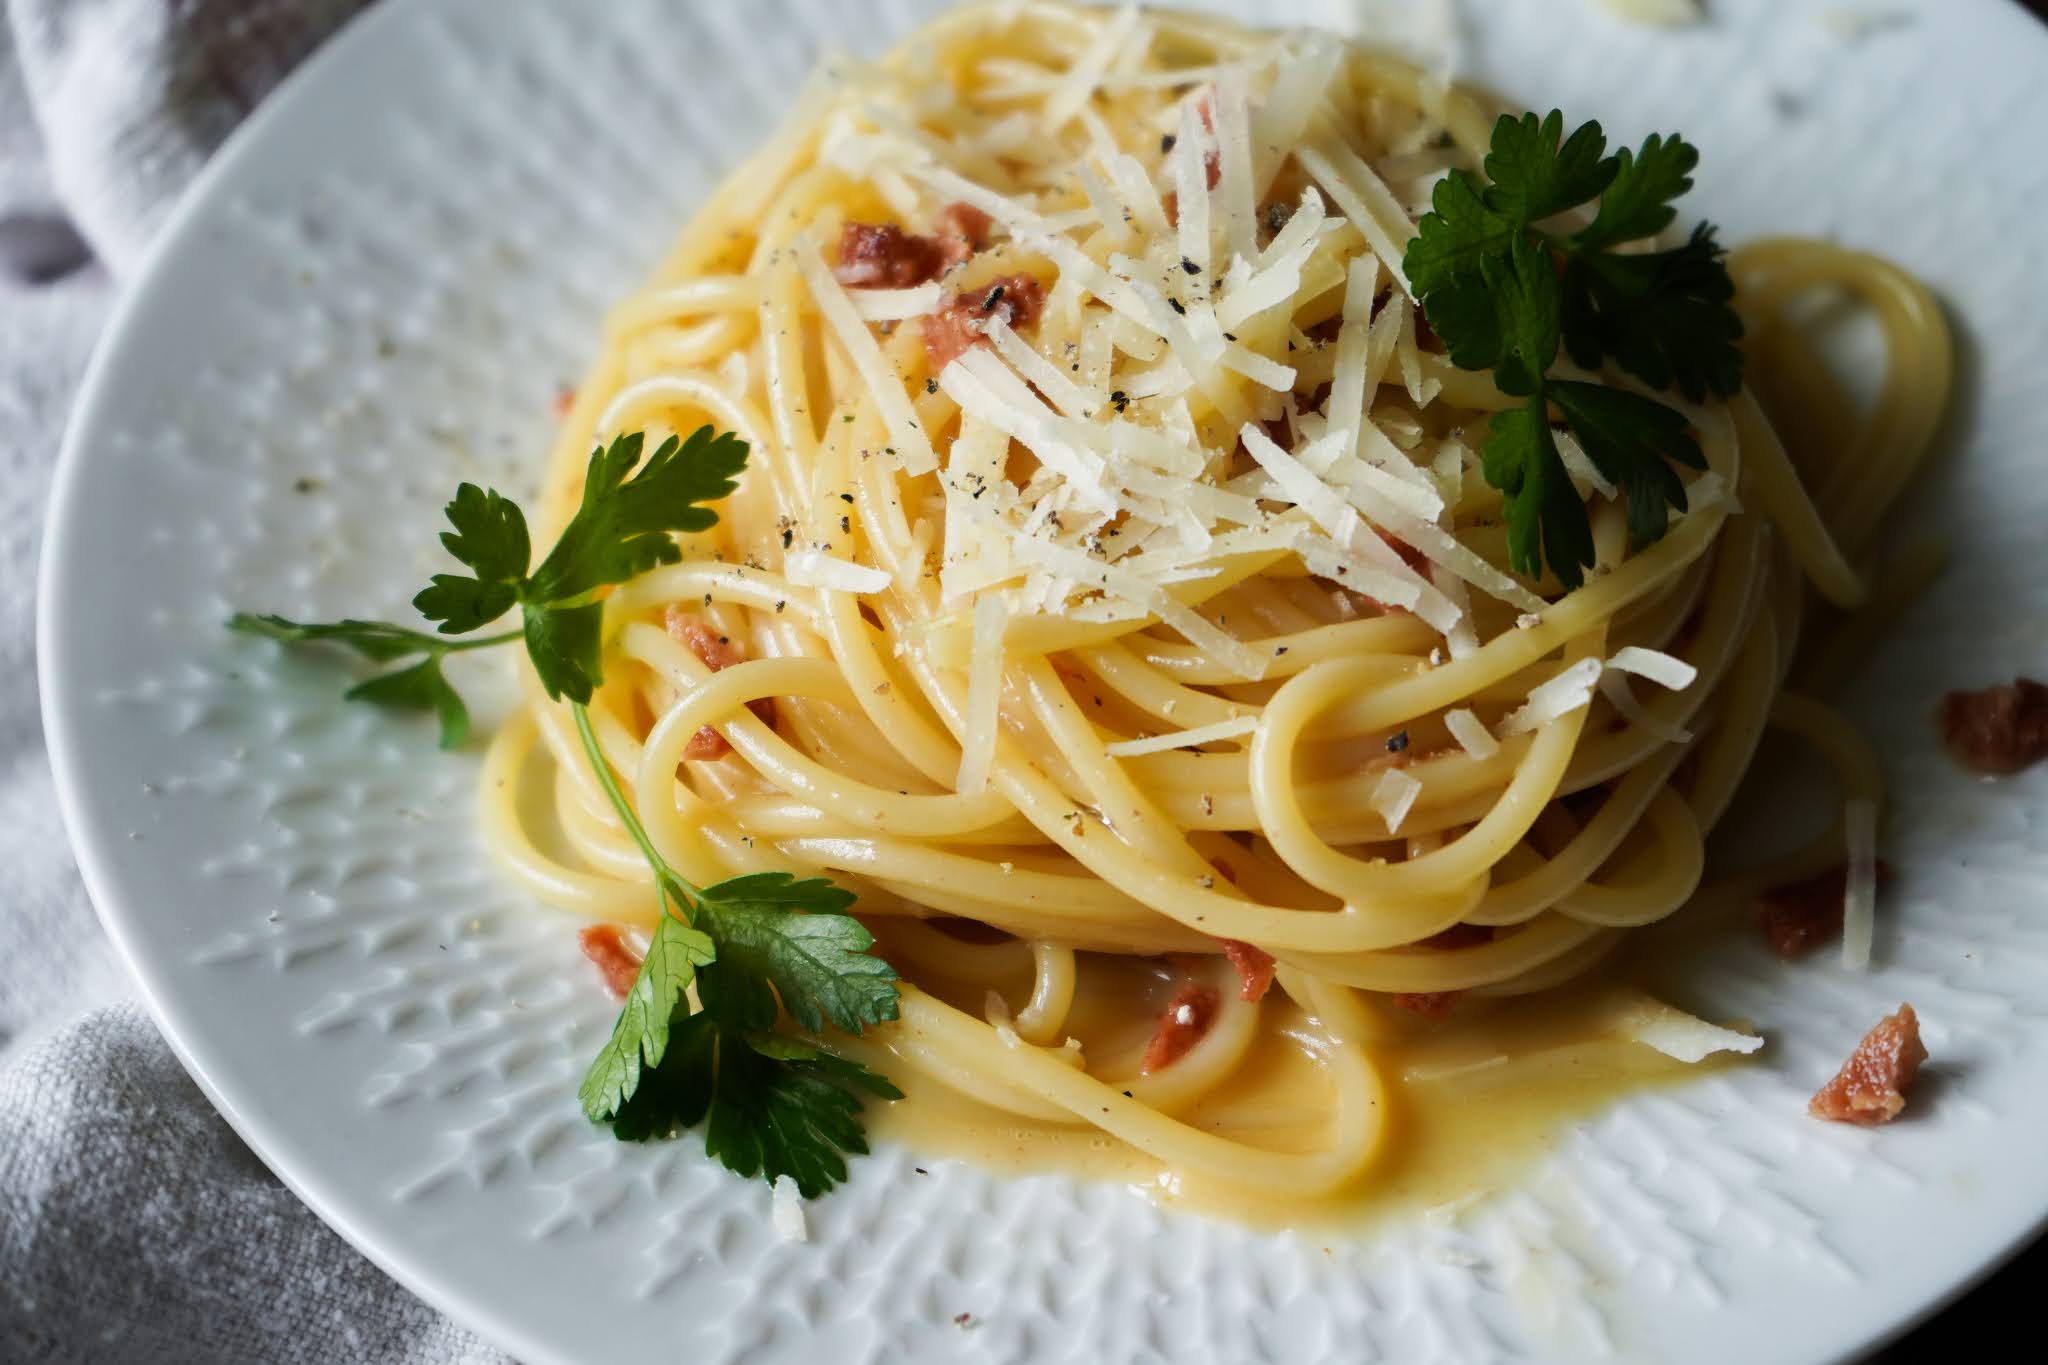 Christina macht was: Vegetarische Spaghetti Carbonara (mit veganem Speck)